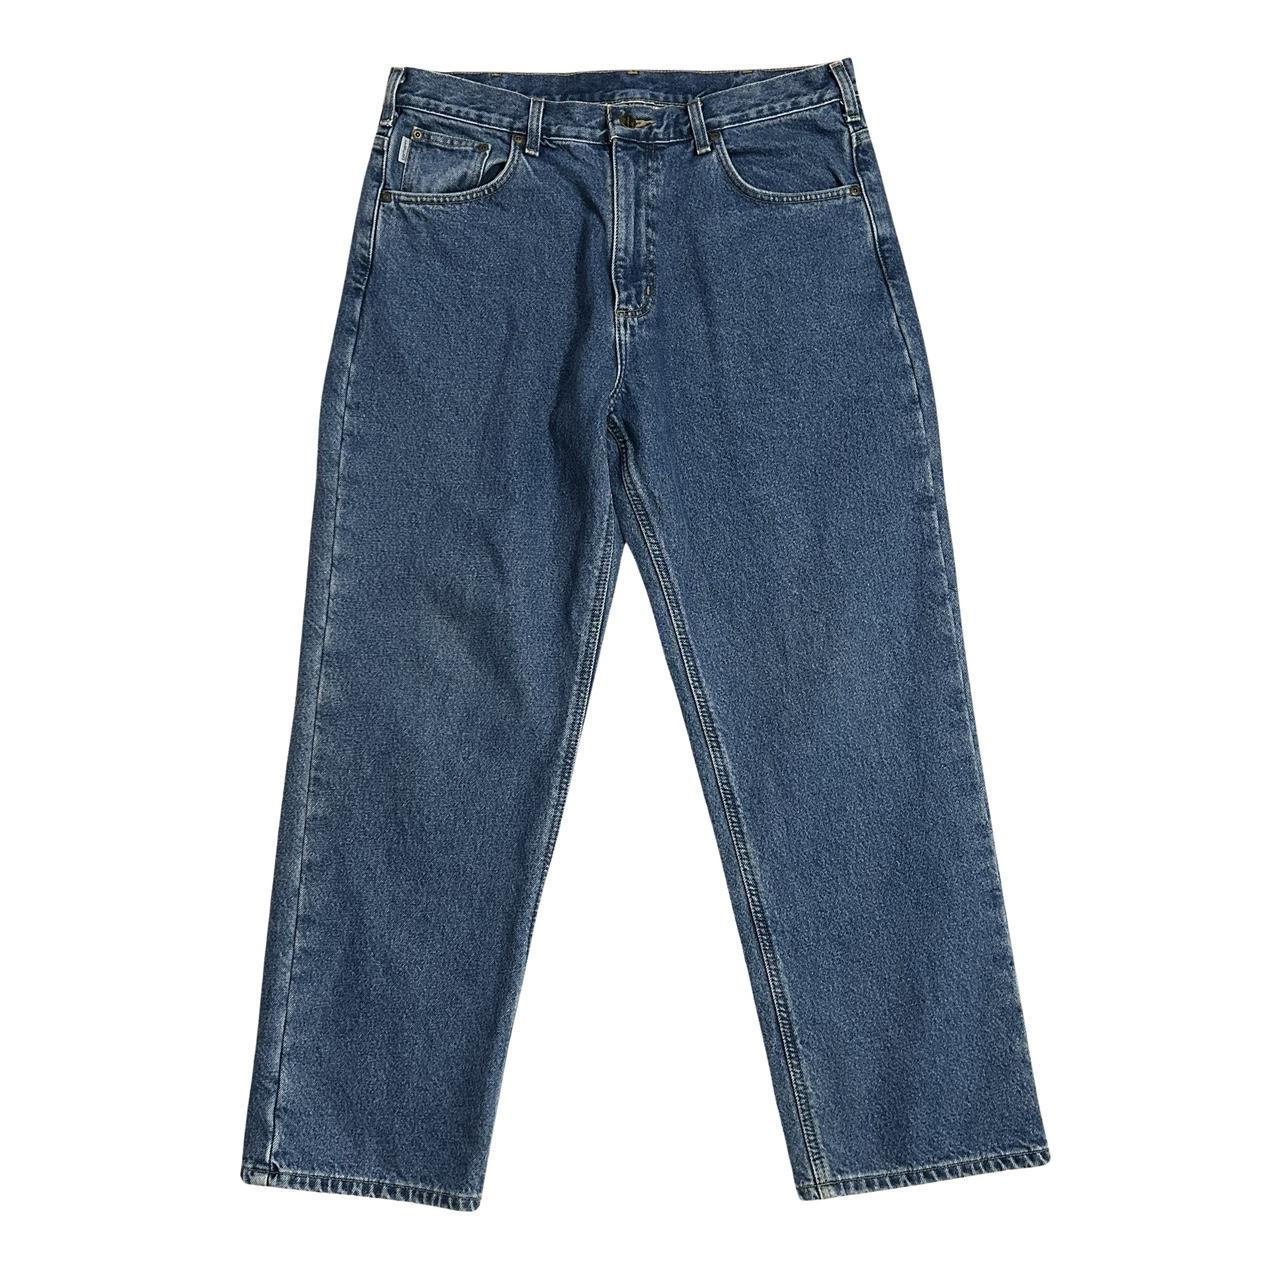 Carhartt fleece lined carpenter pants 📏Size 36 x... - Depop